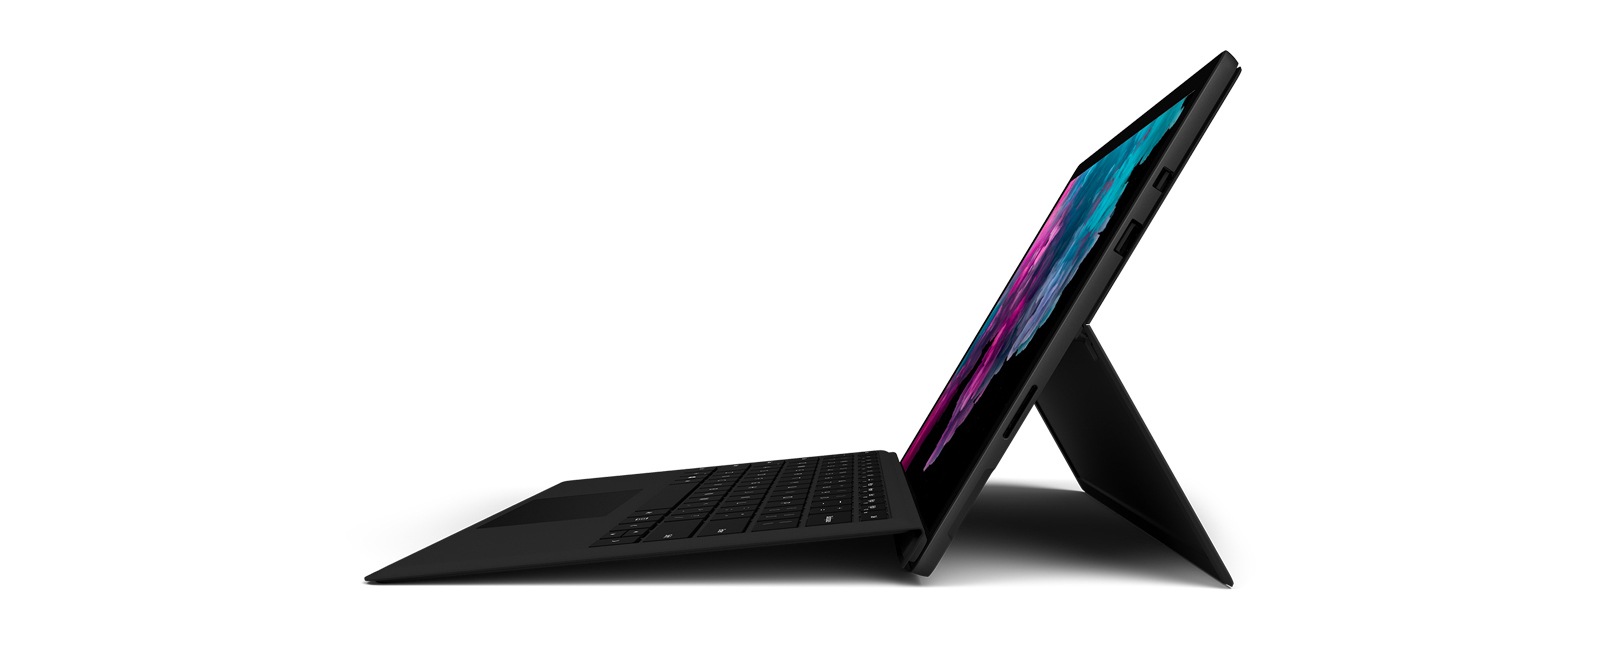 『Surface Pro 6』タイプカバー同梱版が登場！ 単体で買うよりオトク。 - WPTeq